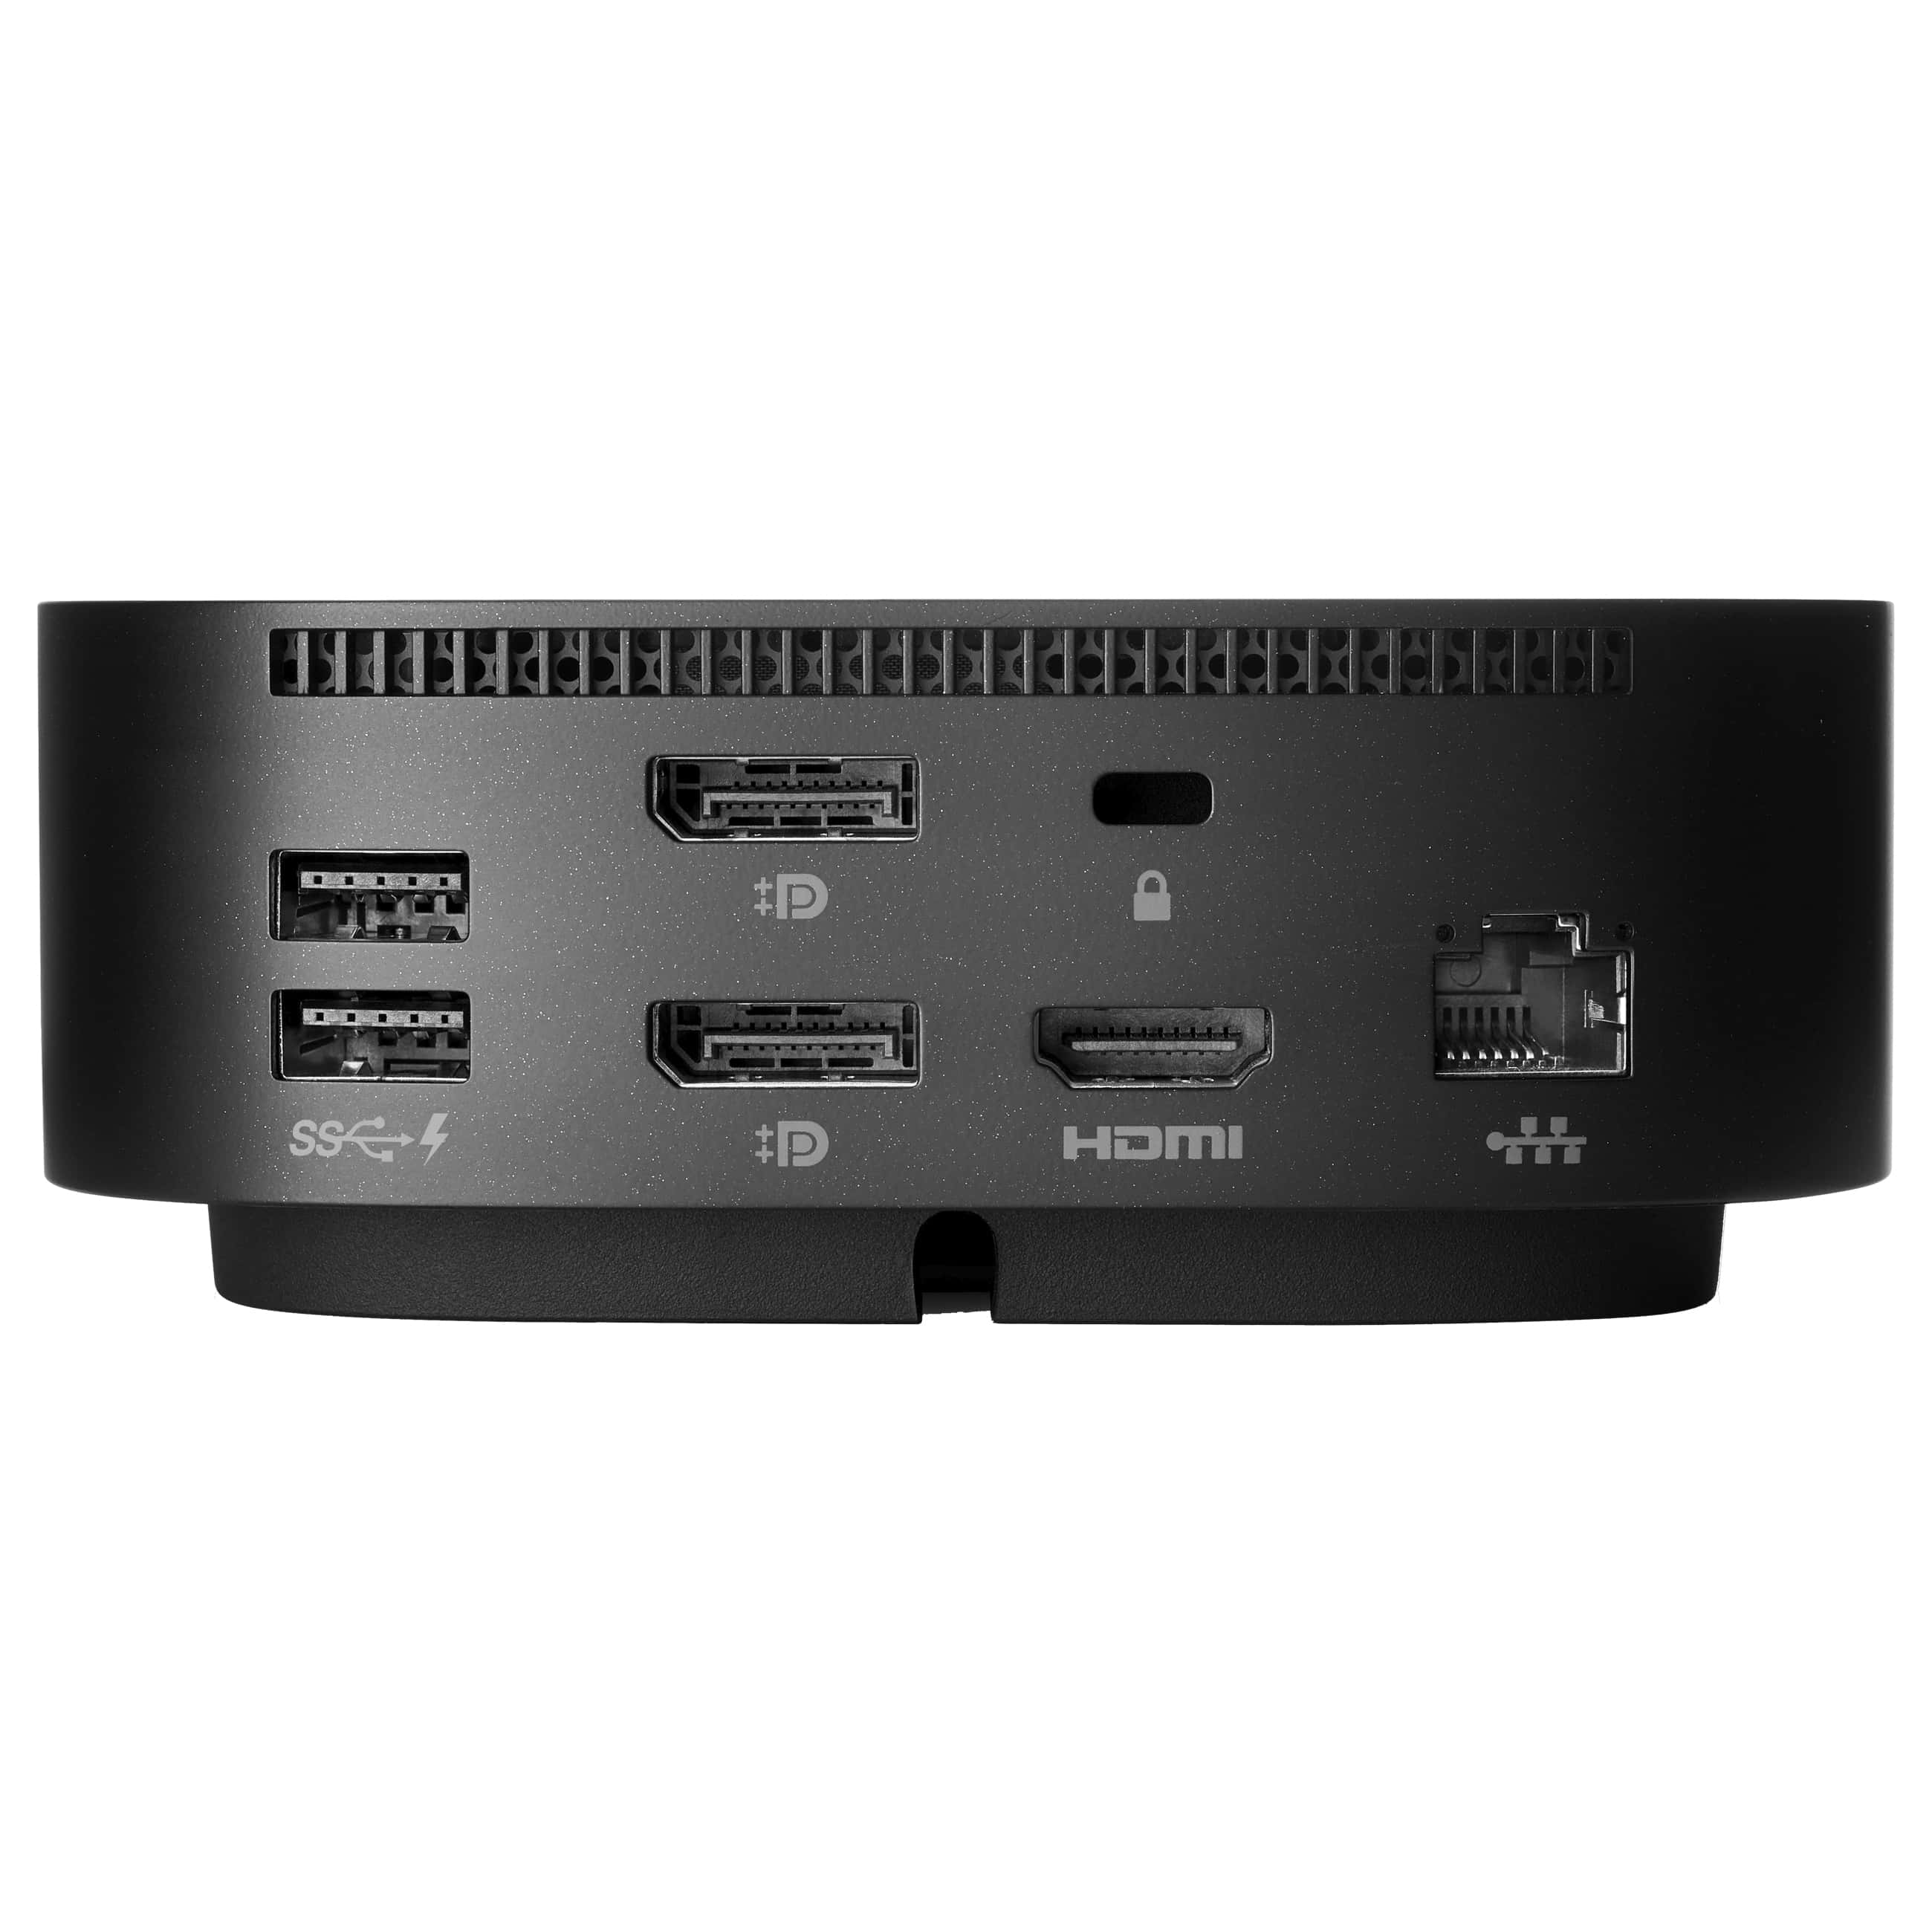 HP USB-C Dock G5 (5TW10AA)Sehr gut - AfB-refurbished